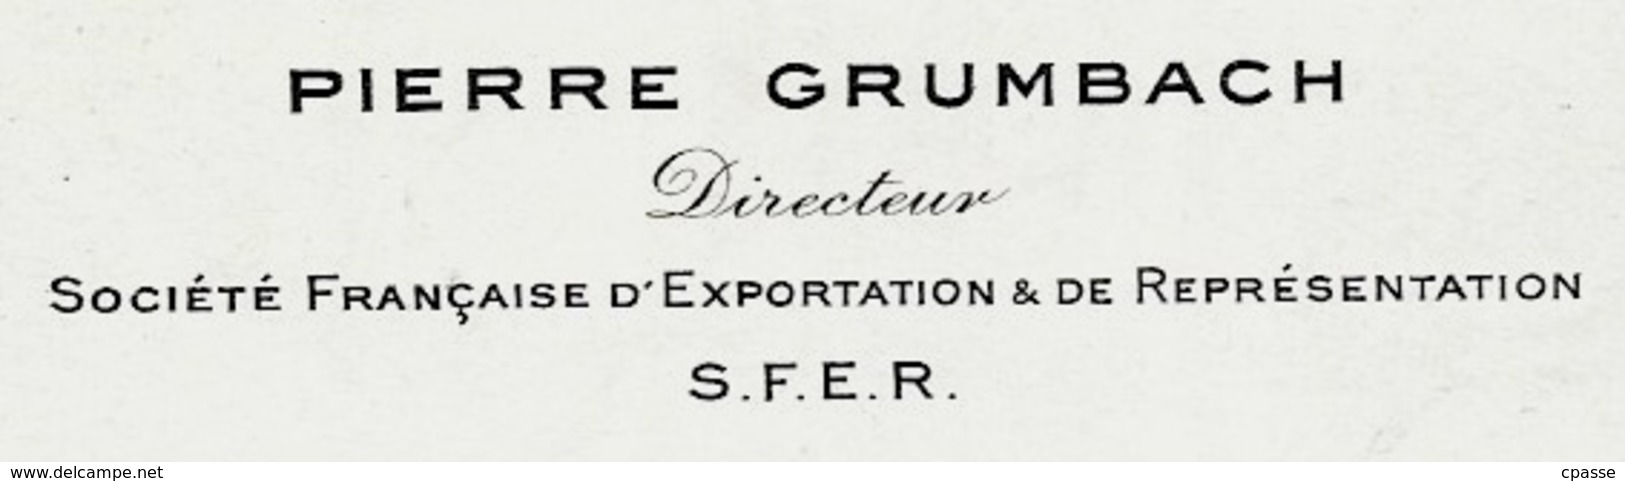 Carte De Visite PIERRE GRUMBACH Directeur Société Française D'Exportation & De Représentation 75009 Paris Rue Mayran - Visitenkarten